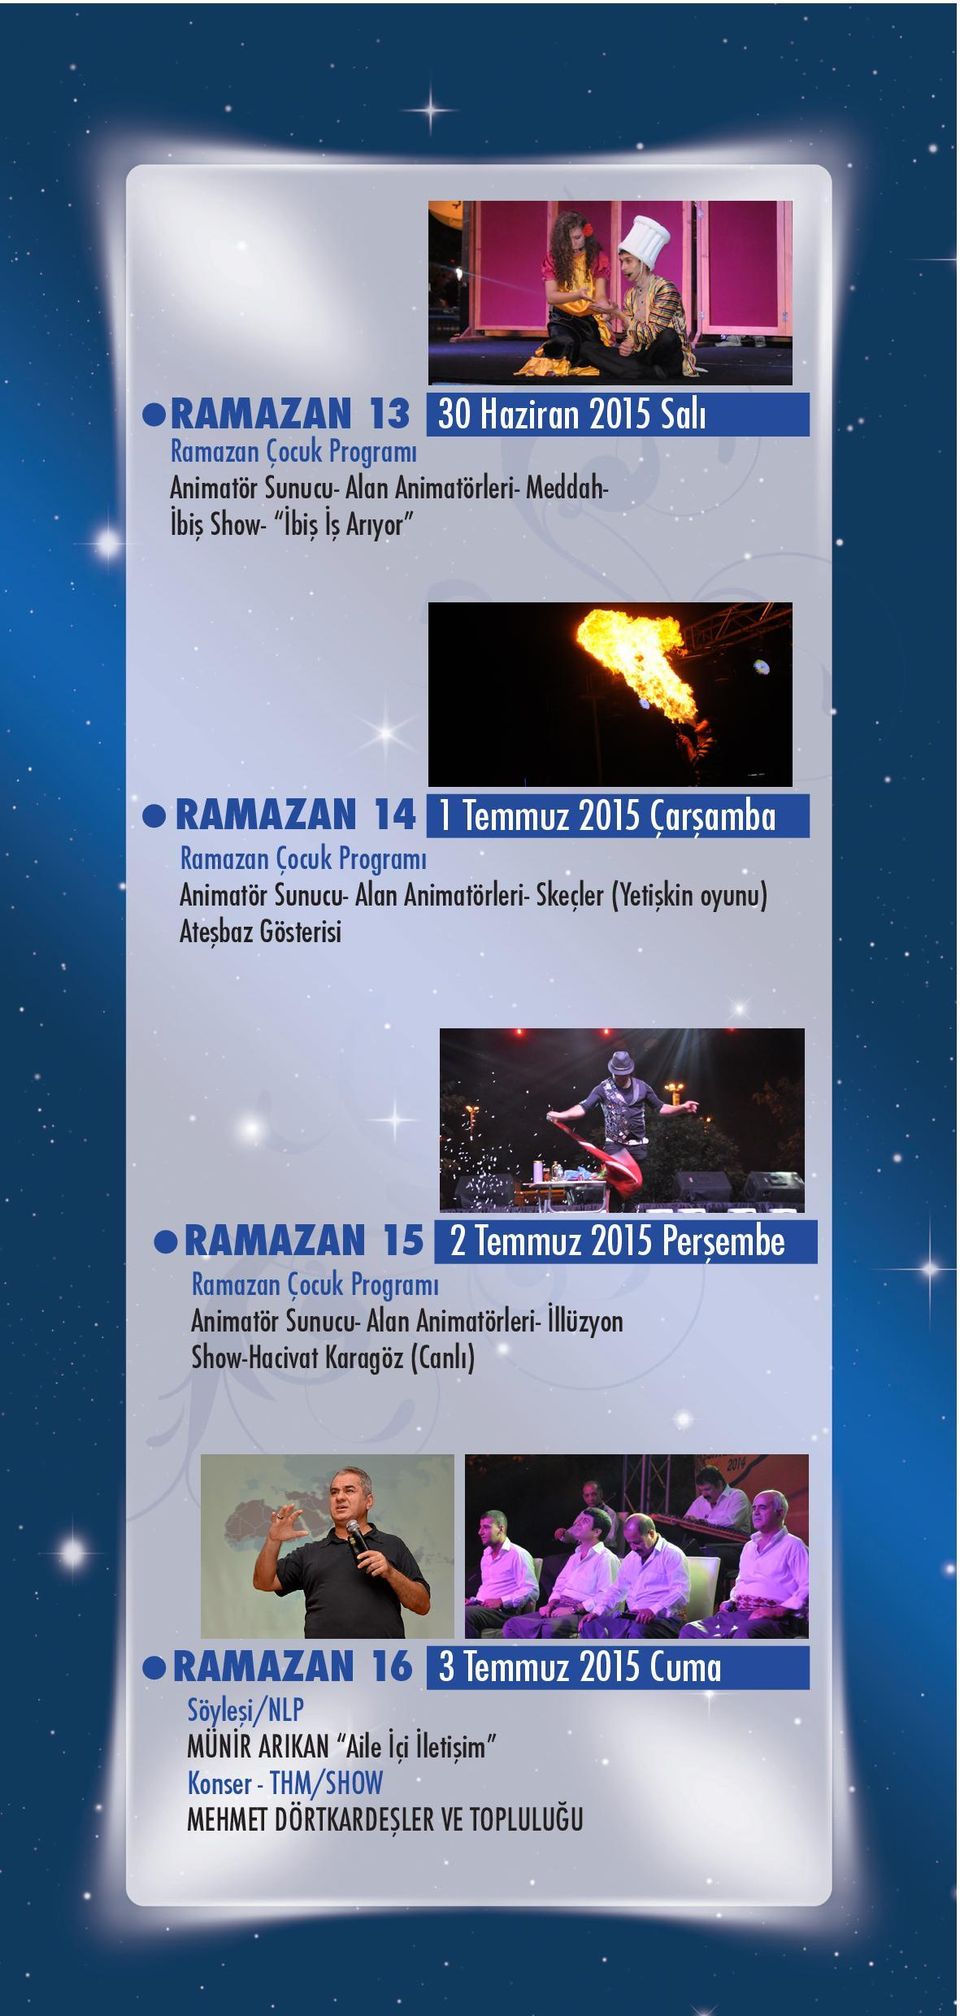 RAMAZAN 15 2 Temmuz 2015 Perşembe Animatör Sunucu- Alan Animatörleri- İllüzyon Show-Hacivat Karagöz (Canlı)